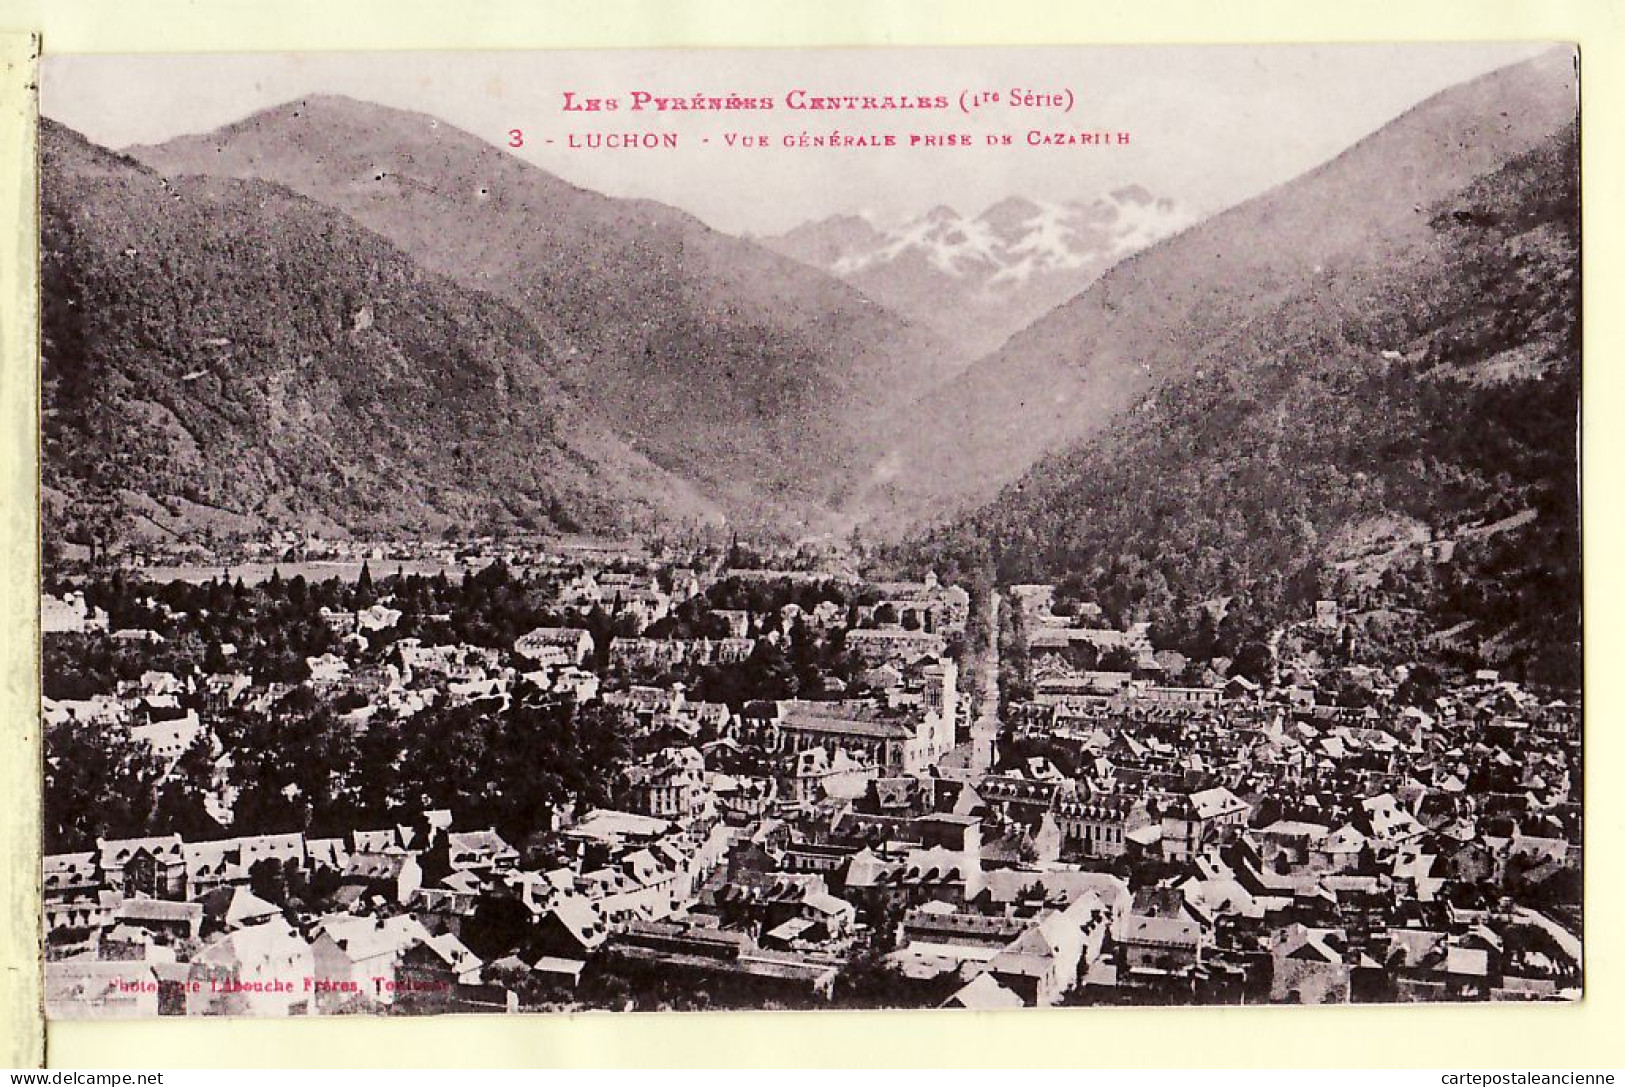 30994 / ⭐ ◉ LUCHON 31-Haute Garonne Vue Generale Prise CAZARILH Pyrénées Centrales 1910s 1er Série LABOUCHE Frères 3 - Luchon